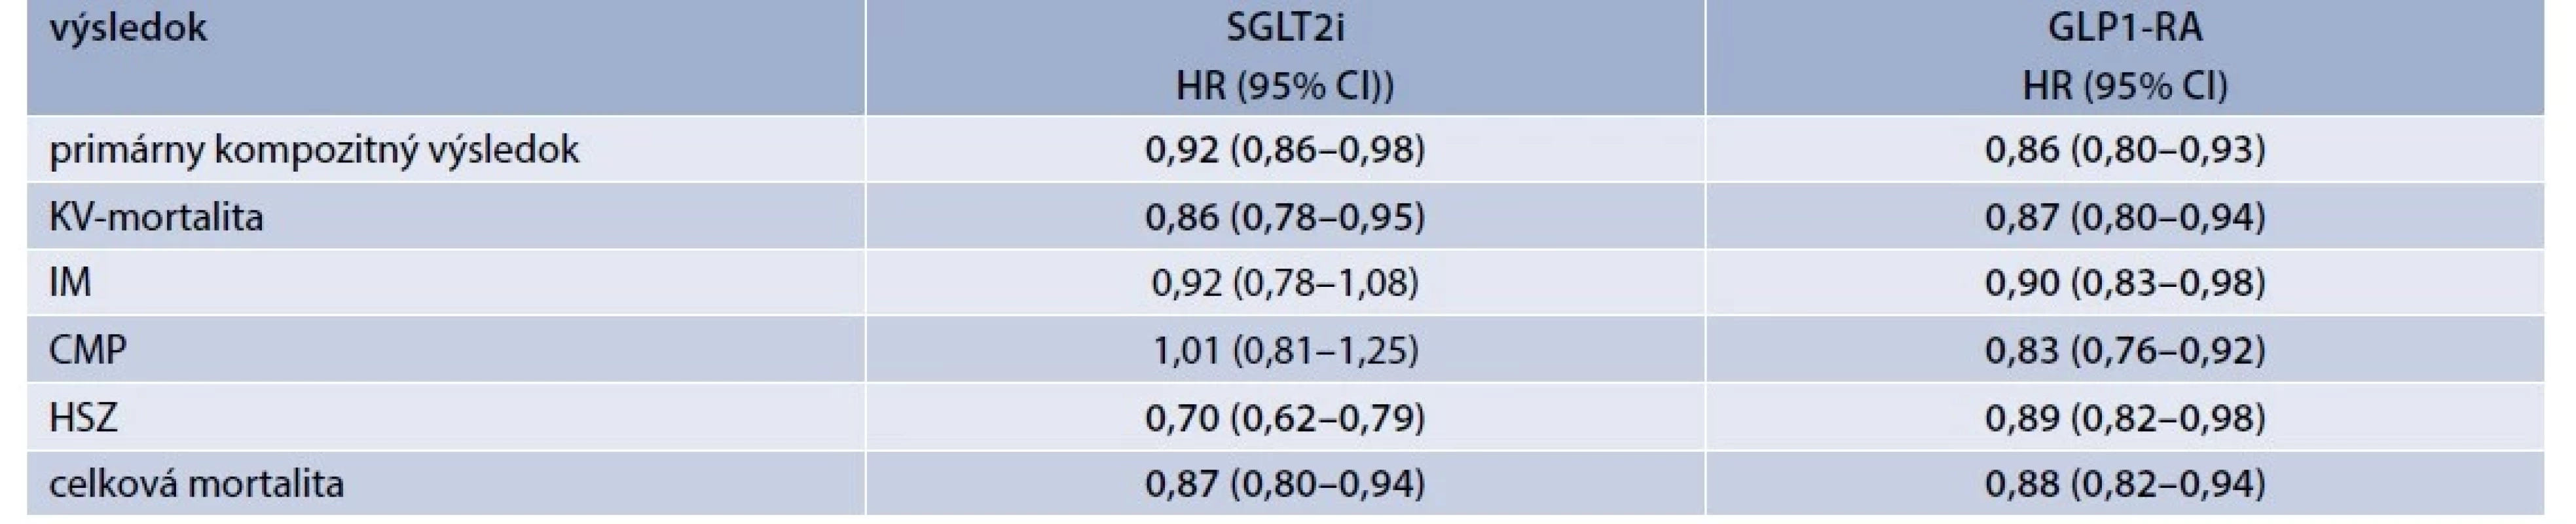 Metaanalýzy štúdií KV-bezpečnosti s SGLT2i (n = 4) a agonistami GLP1-RA (n = 8)